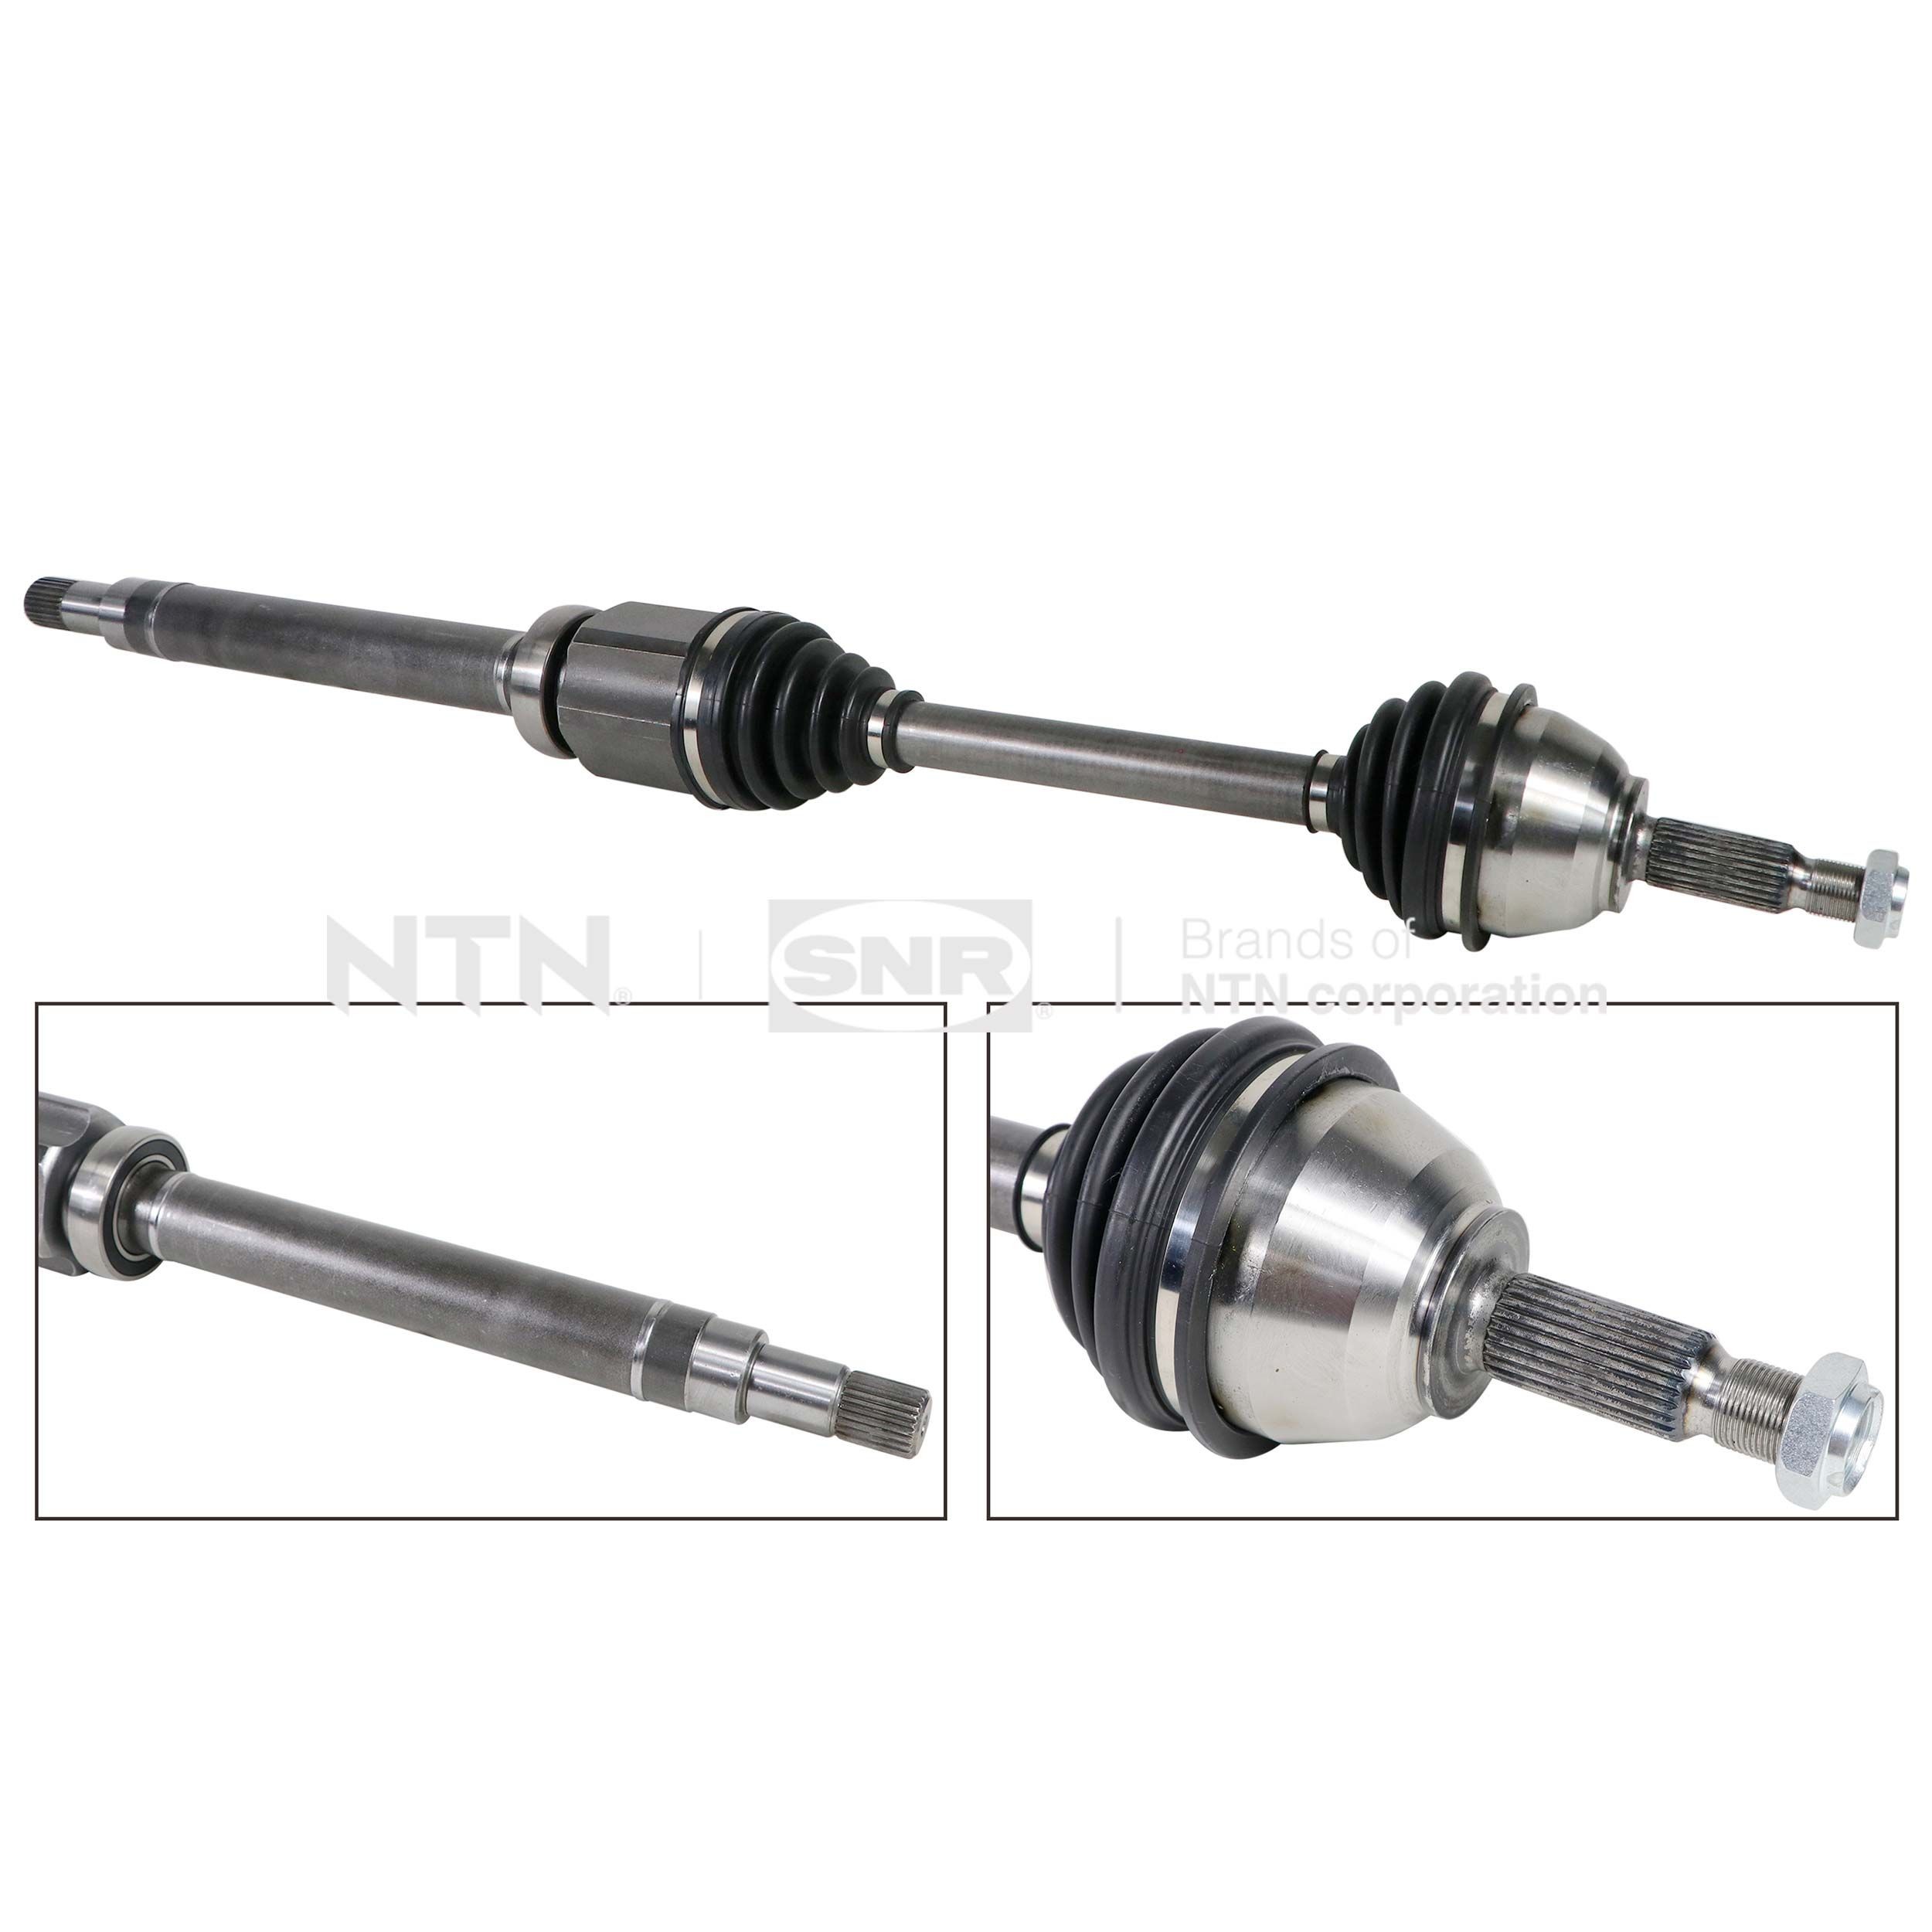 SNR DK52.018 Drive shaft 2T14-3B436-CE